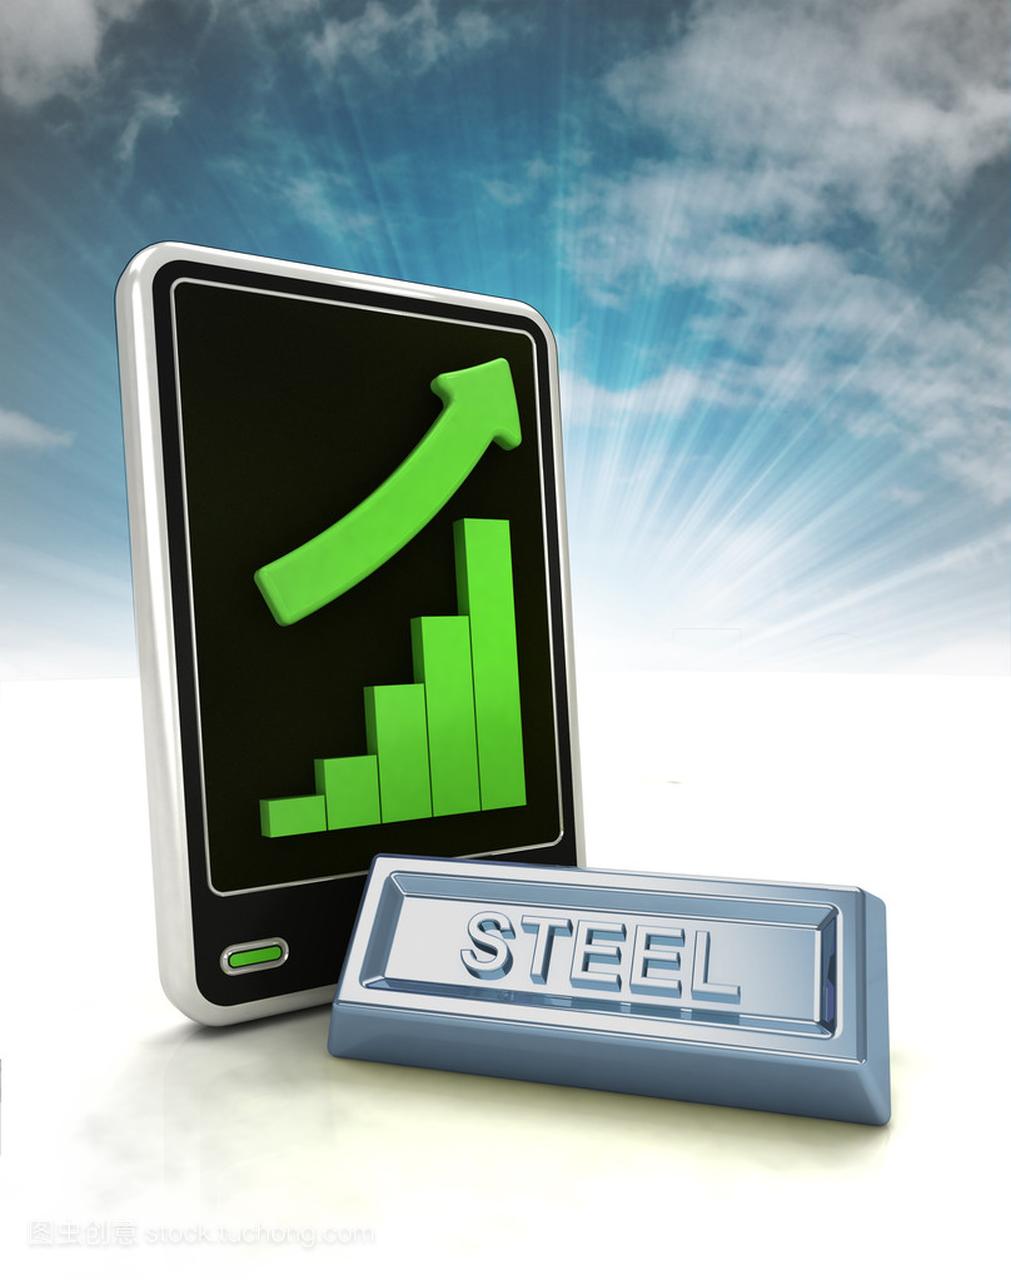 增加图形状态的钢材贸易业务在手机上显示